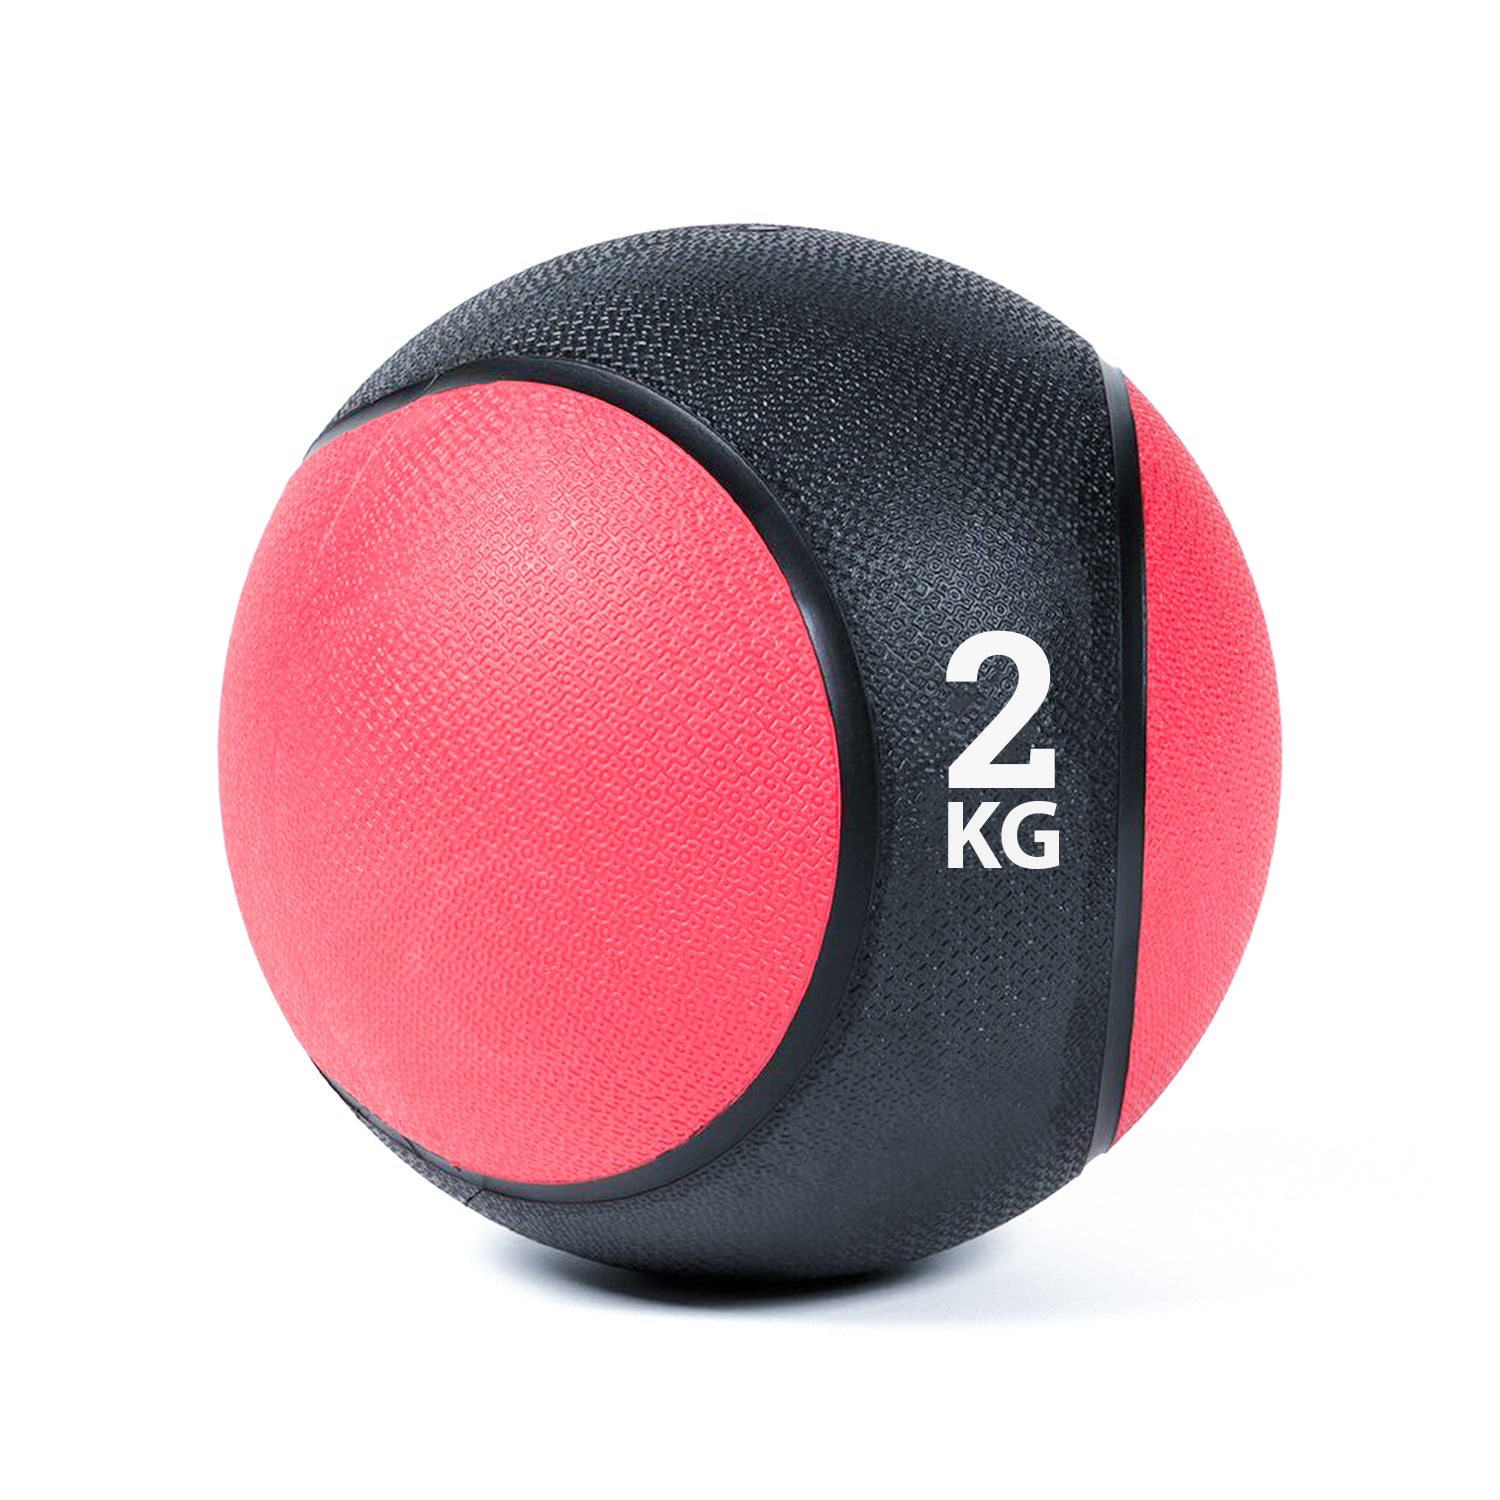 كرة طبية من المطاط لاعادة التأهيل و اللياقة البدنية - لون اسود و احمر - وزن 2 كيلو جرام - Kanteen - كانتين